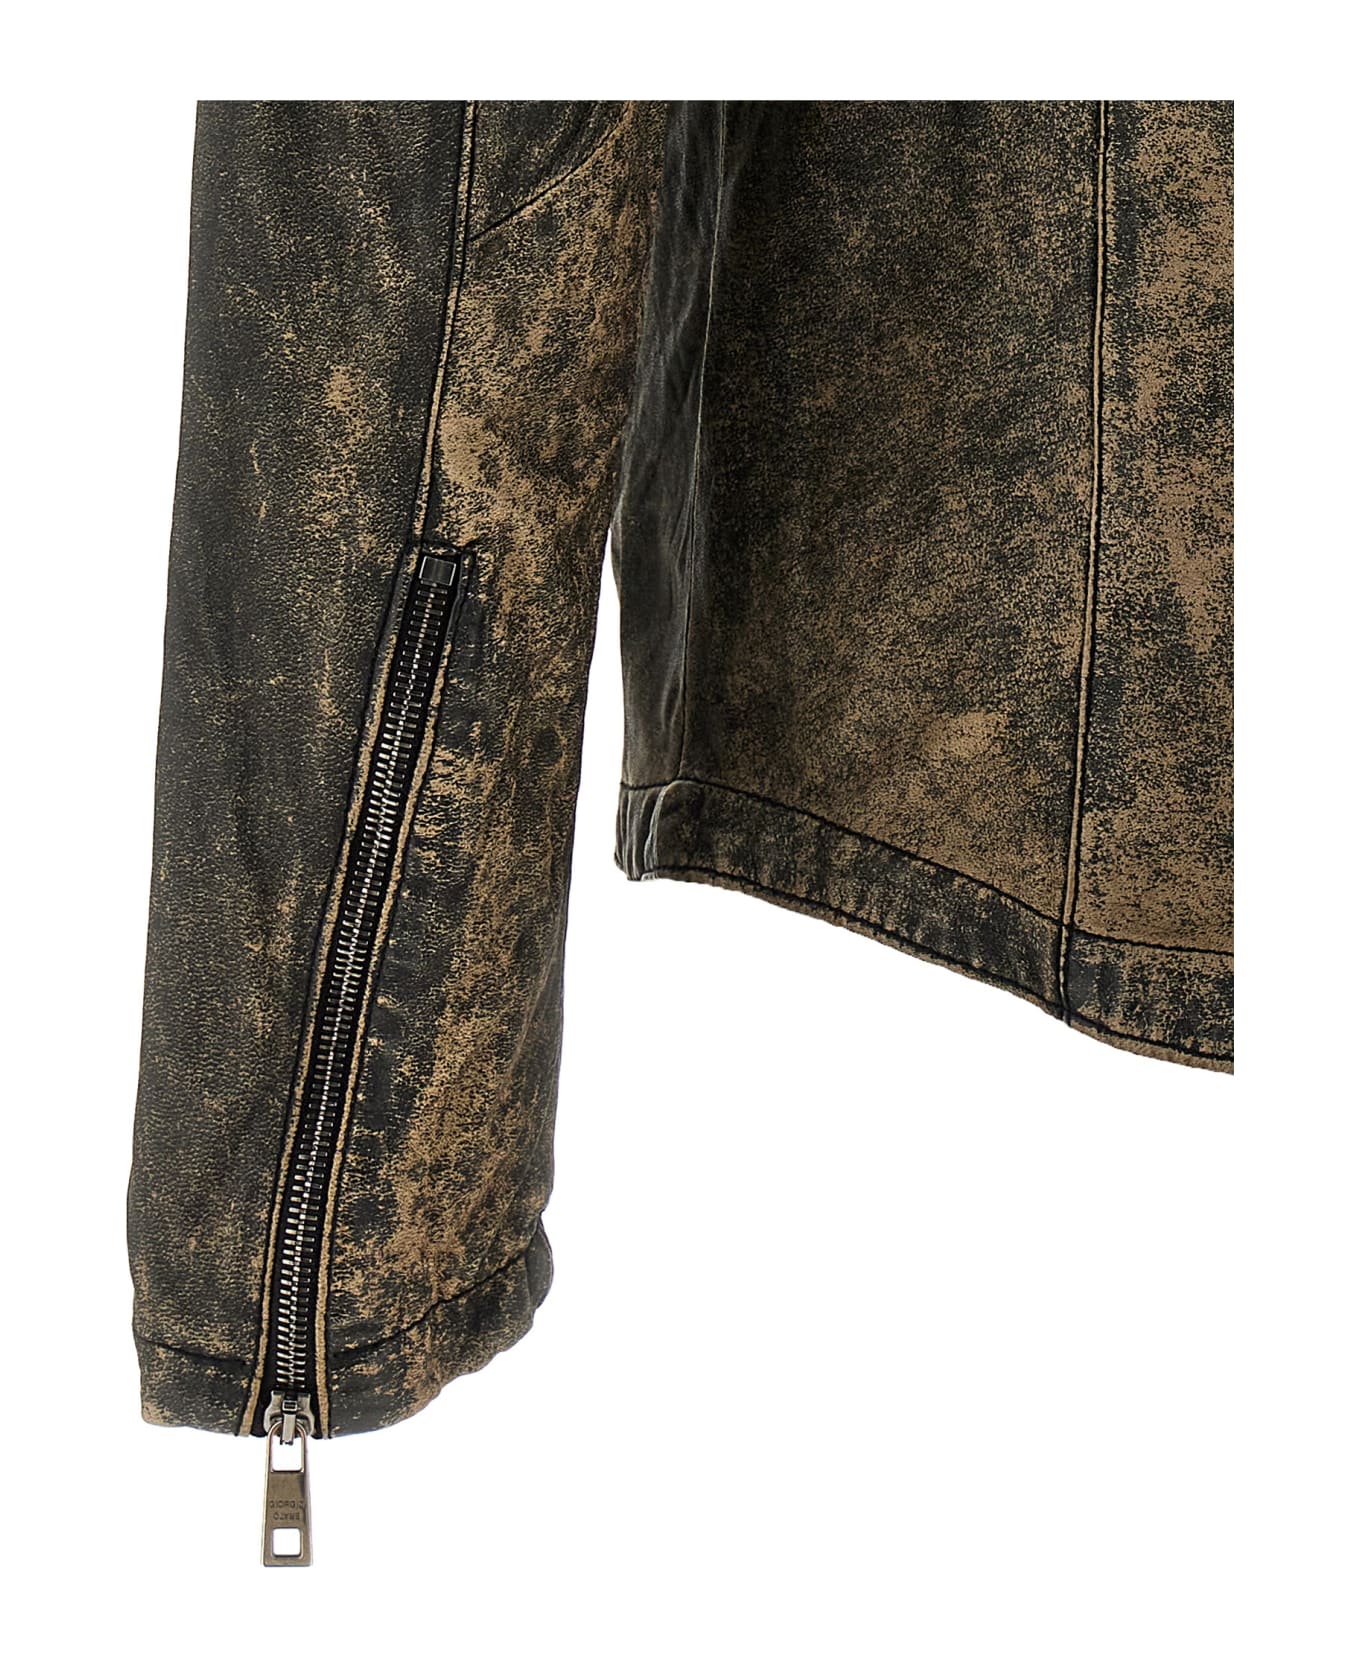 Giorgio Brato Vintage Leather Jacket - Brown レザージャケット